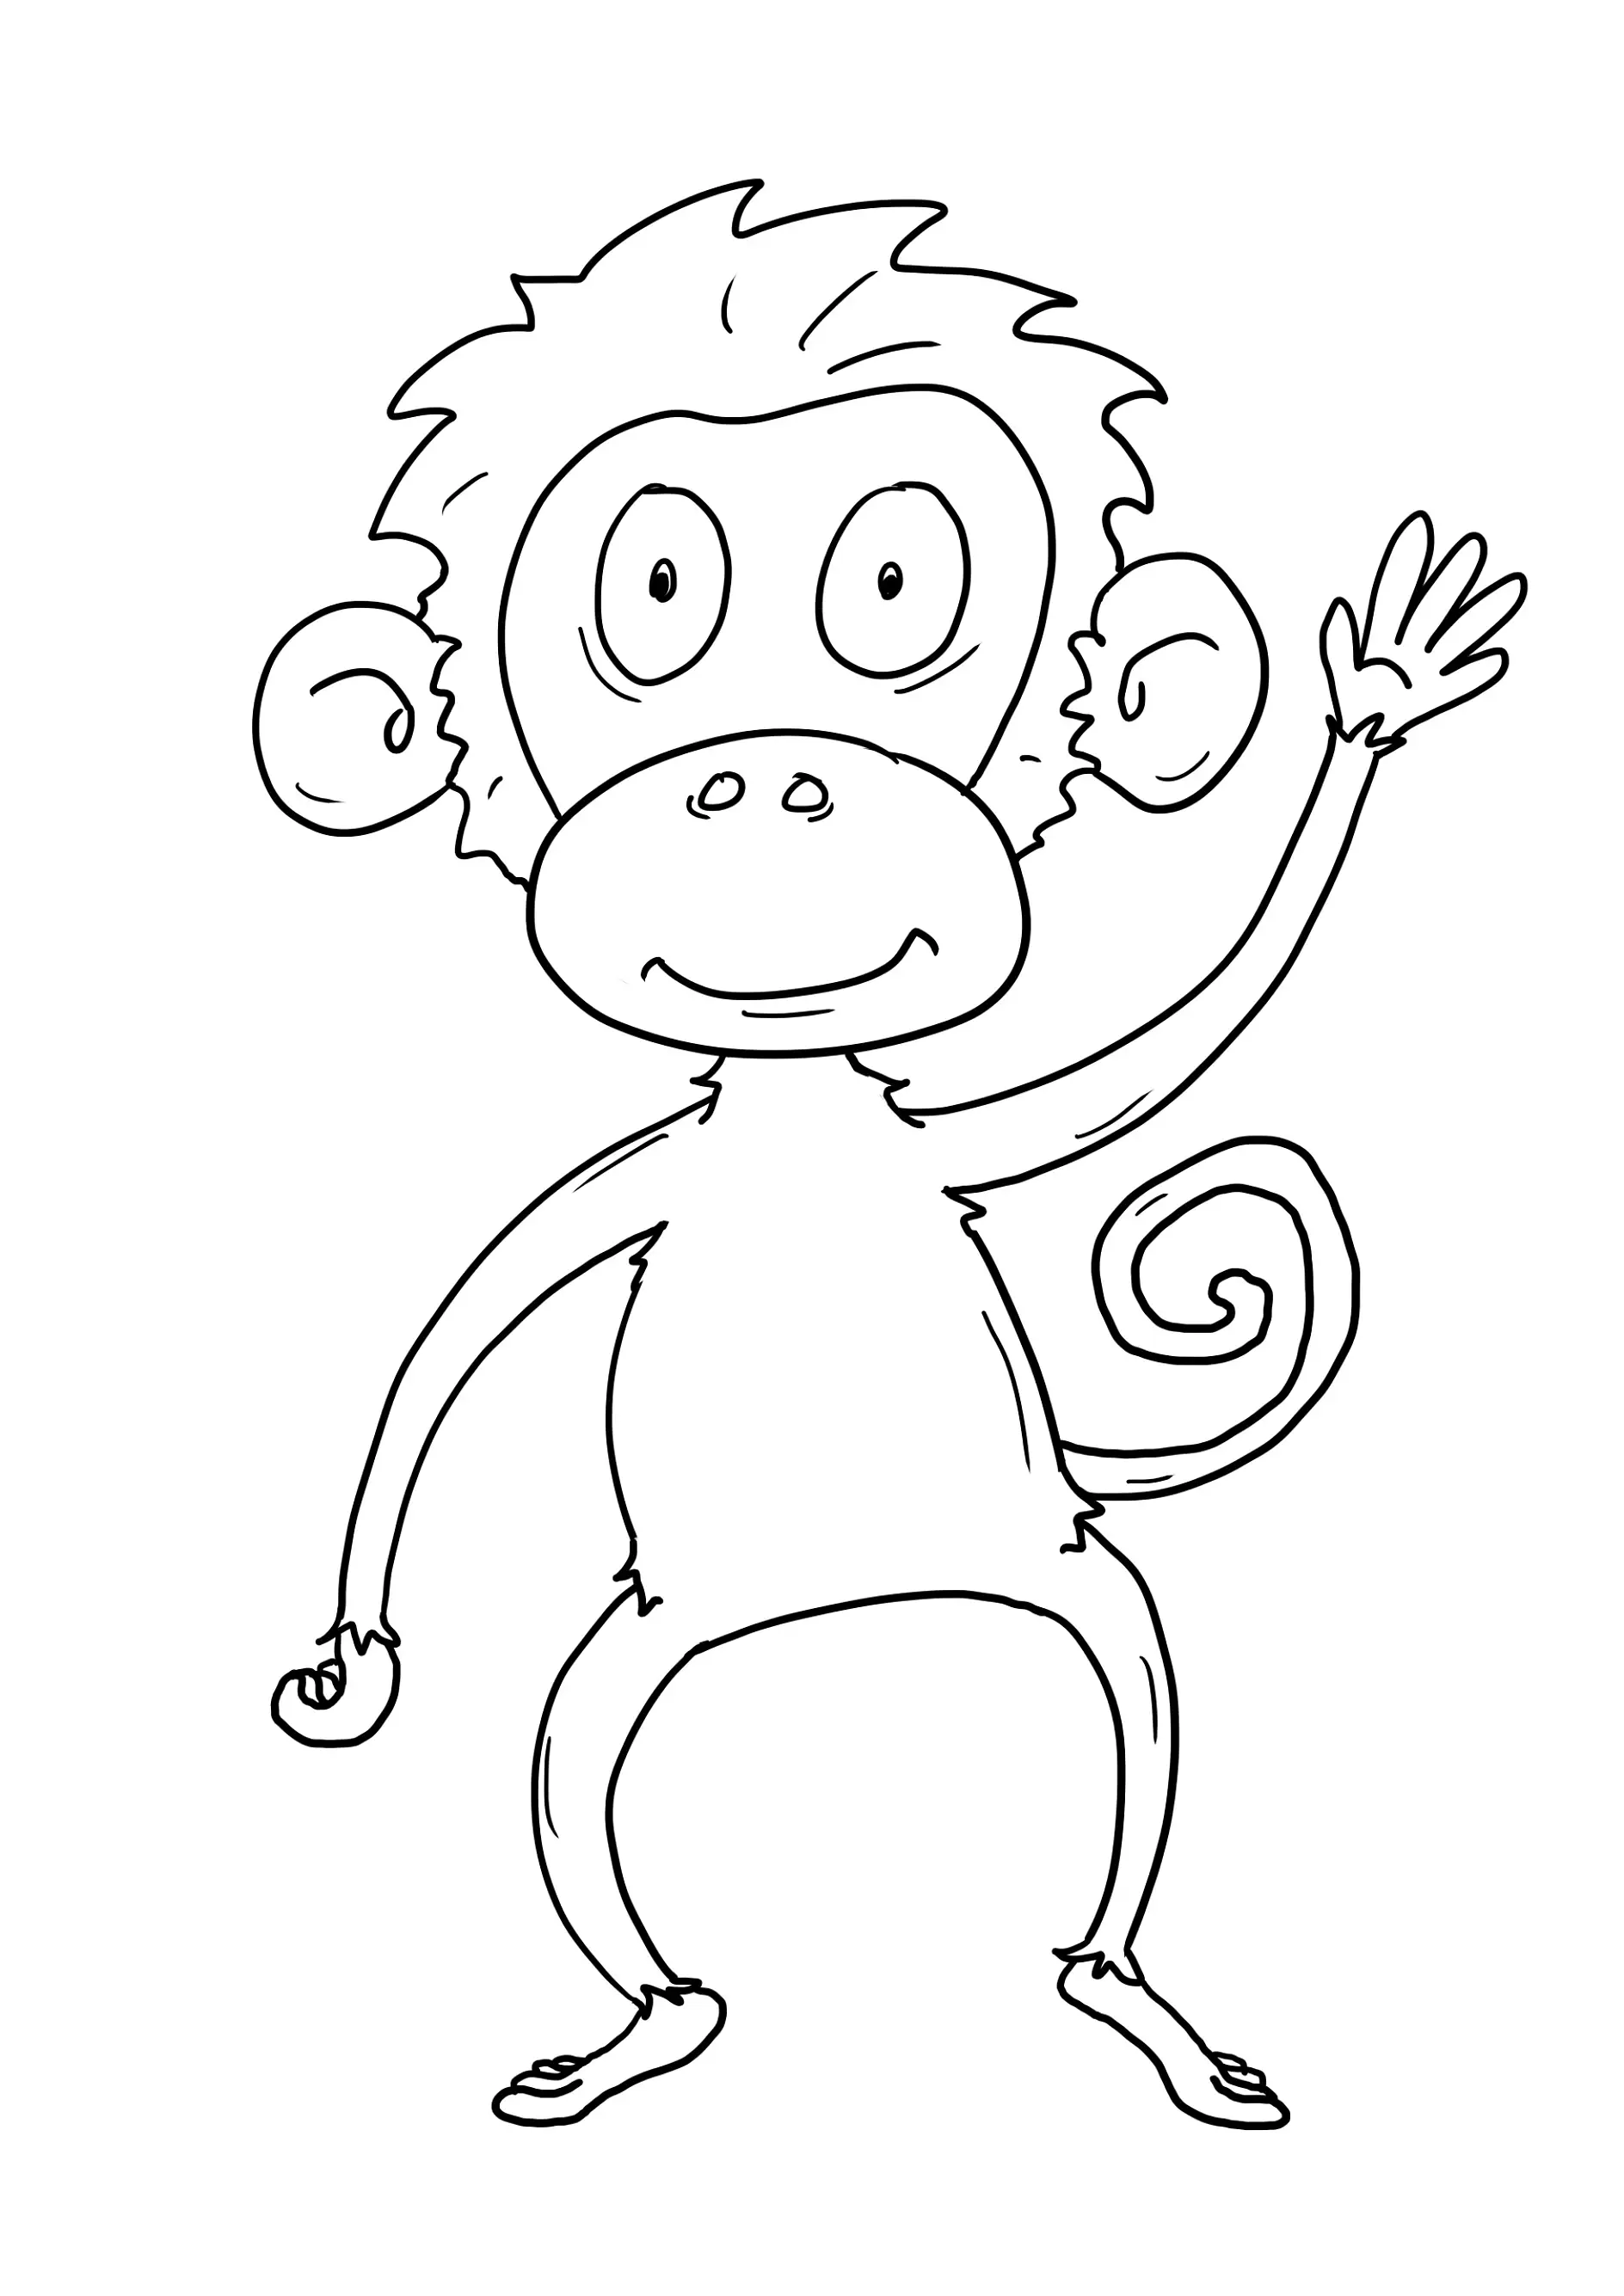 Ausmalbild Affe steht winkend mit einem breiten Lächeln